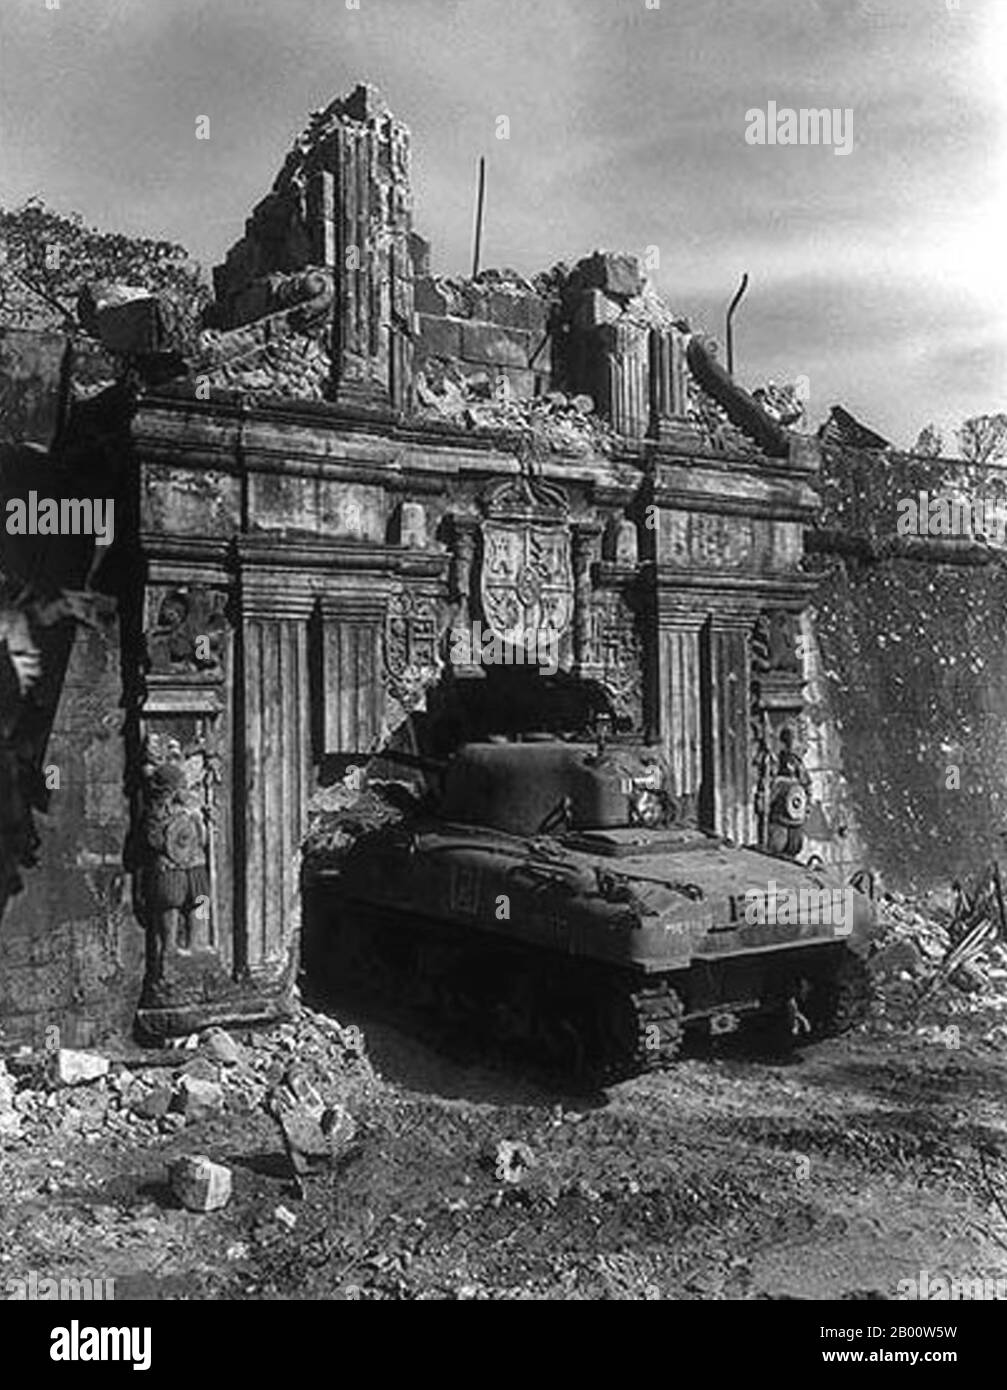 Philippines: Un char de bataille de Sherman de l'armée américaine dans la porte détruite d'Intramuros, bataille de Manille, 1945. La bataille de Manille, du 3 février au 3 mars 1945, menée par les forces américaines, Philippines et japonaises, faisait partie de la campagne des Philippines en 1945. La bataille d'un mois, qui a culminé avec un terrible bain de sang et la dévastation totale de la ville, a été le théâtre des pires combats urbains dans le Pacifique et a mis fin à près de trois ans d'occupation militaire japonaise aux Philippines (1942-1945). La capture de la ville a été marquée comme la clé de la victoire du général Douglas MacArthur. Banque D'Images